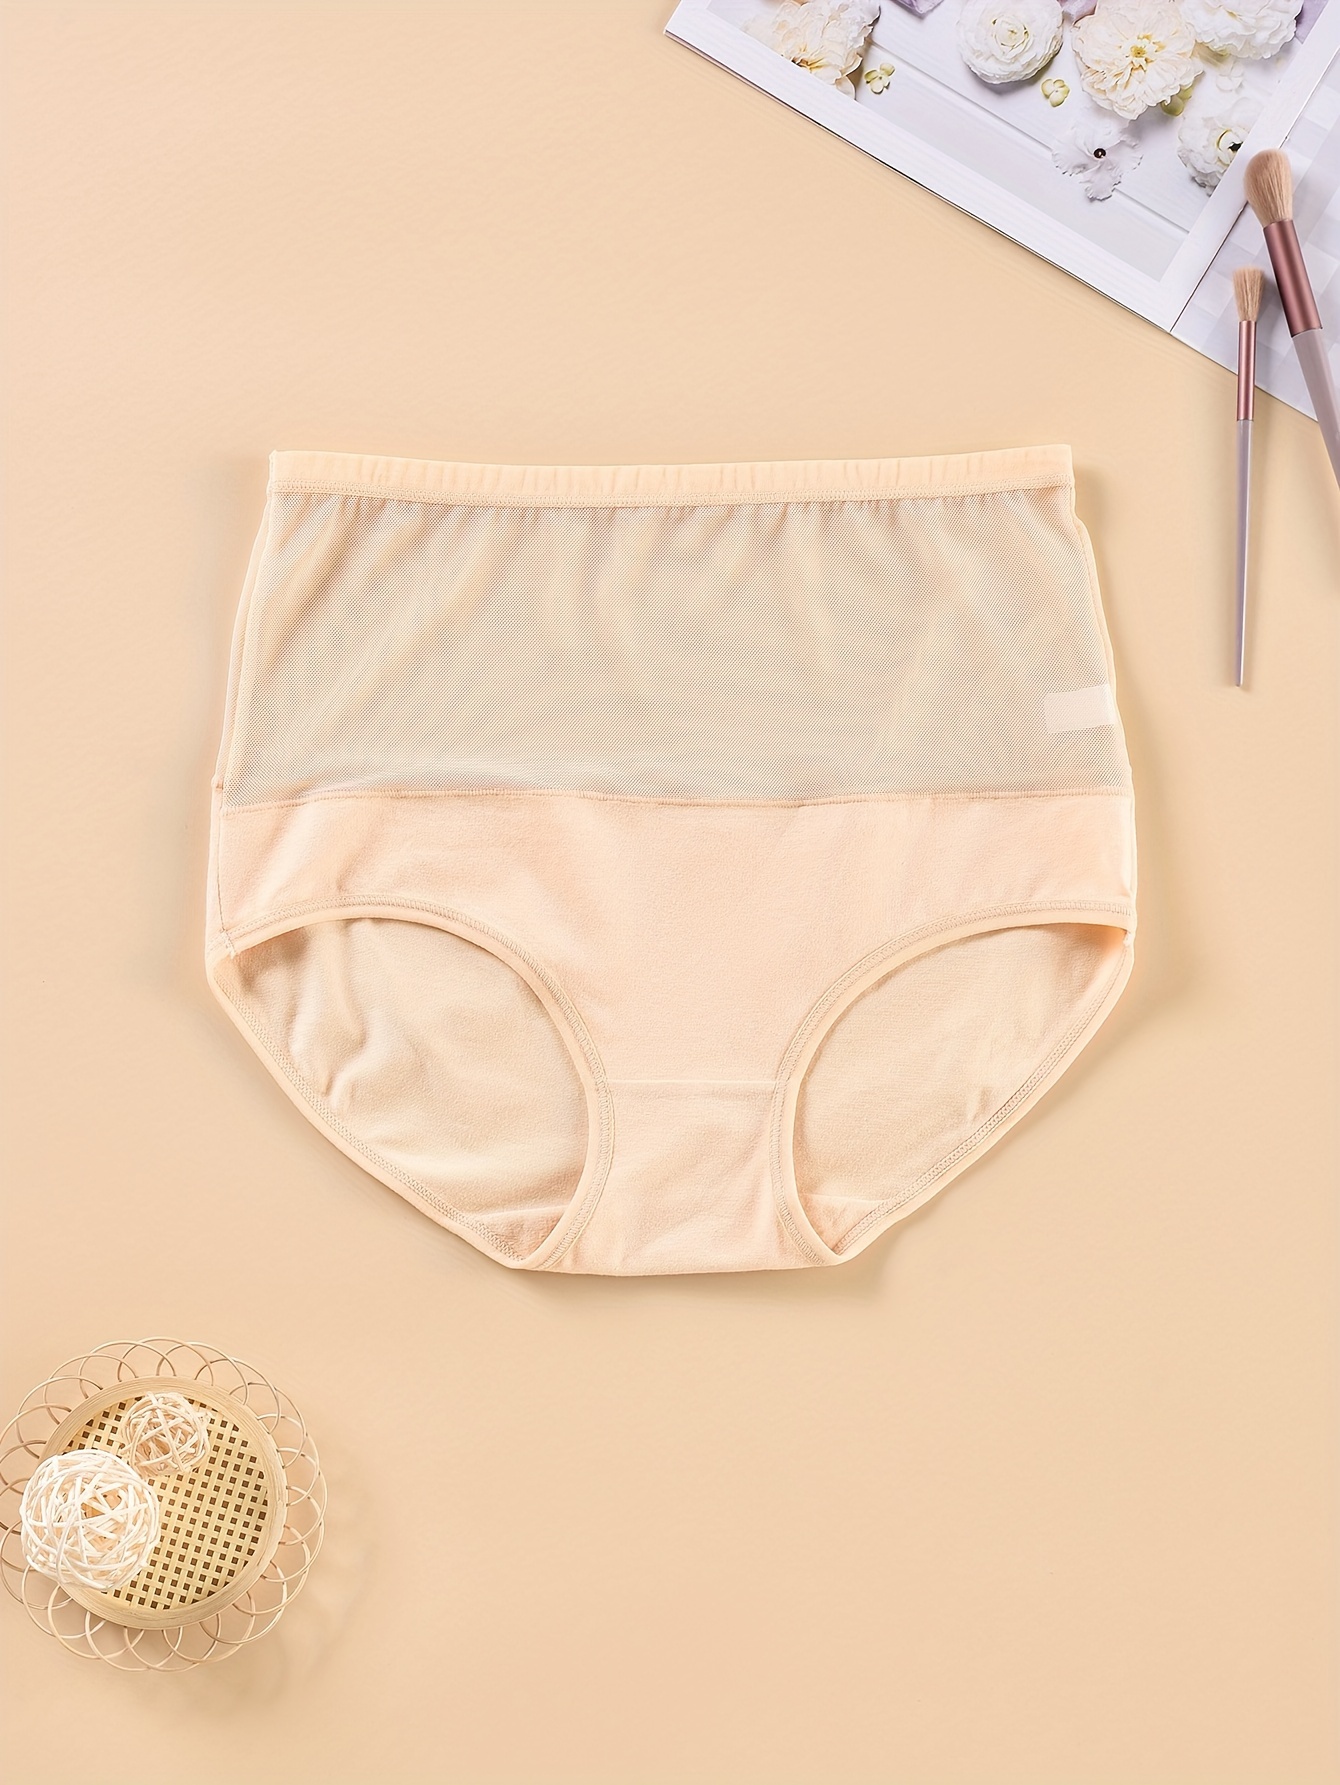 Net Panties For Ladies - Temu